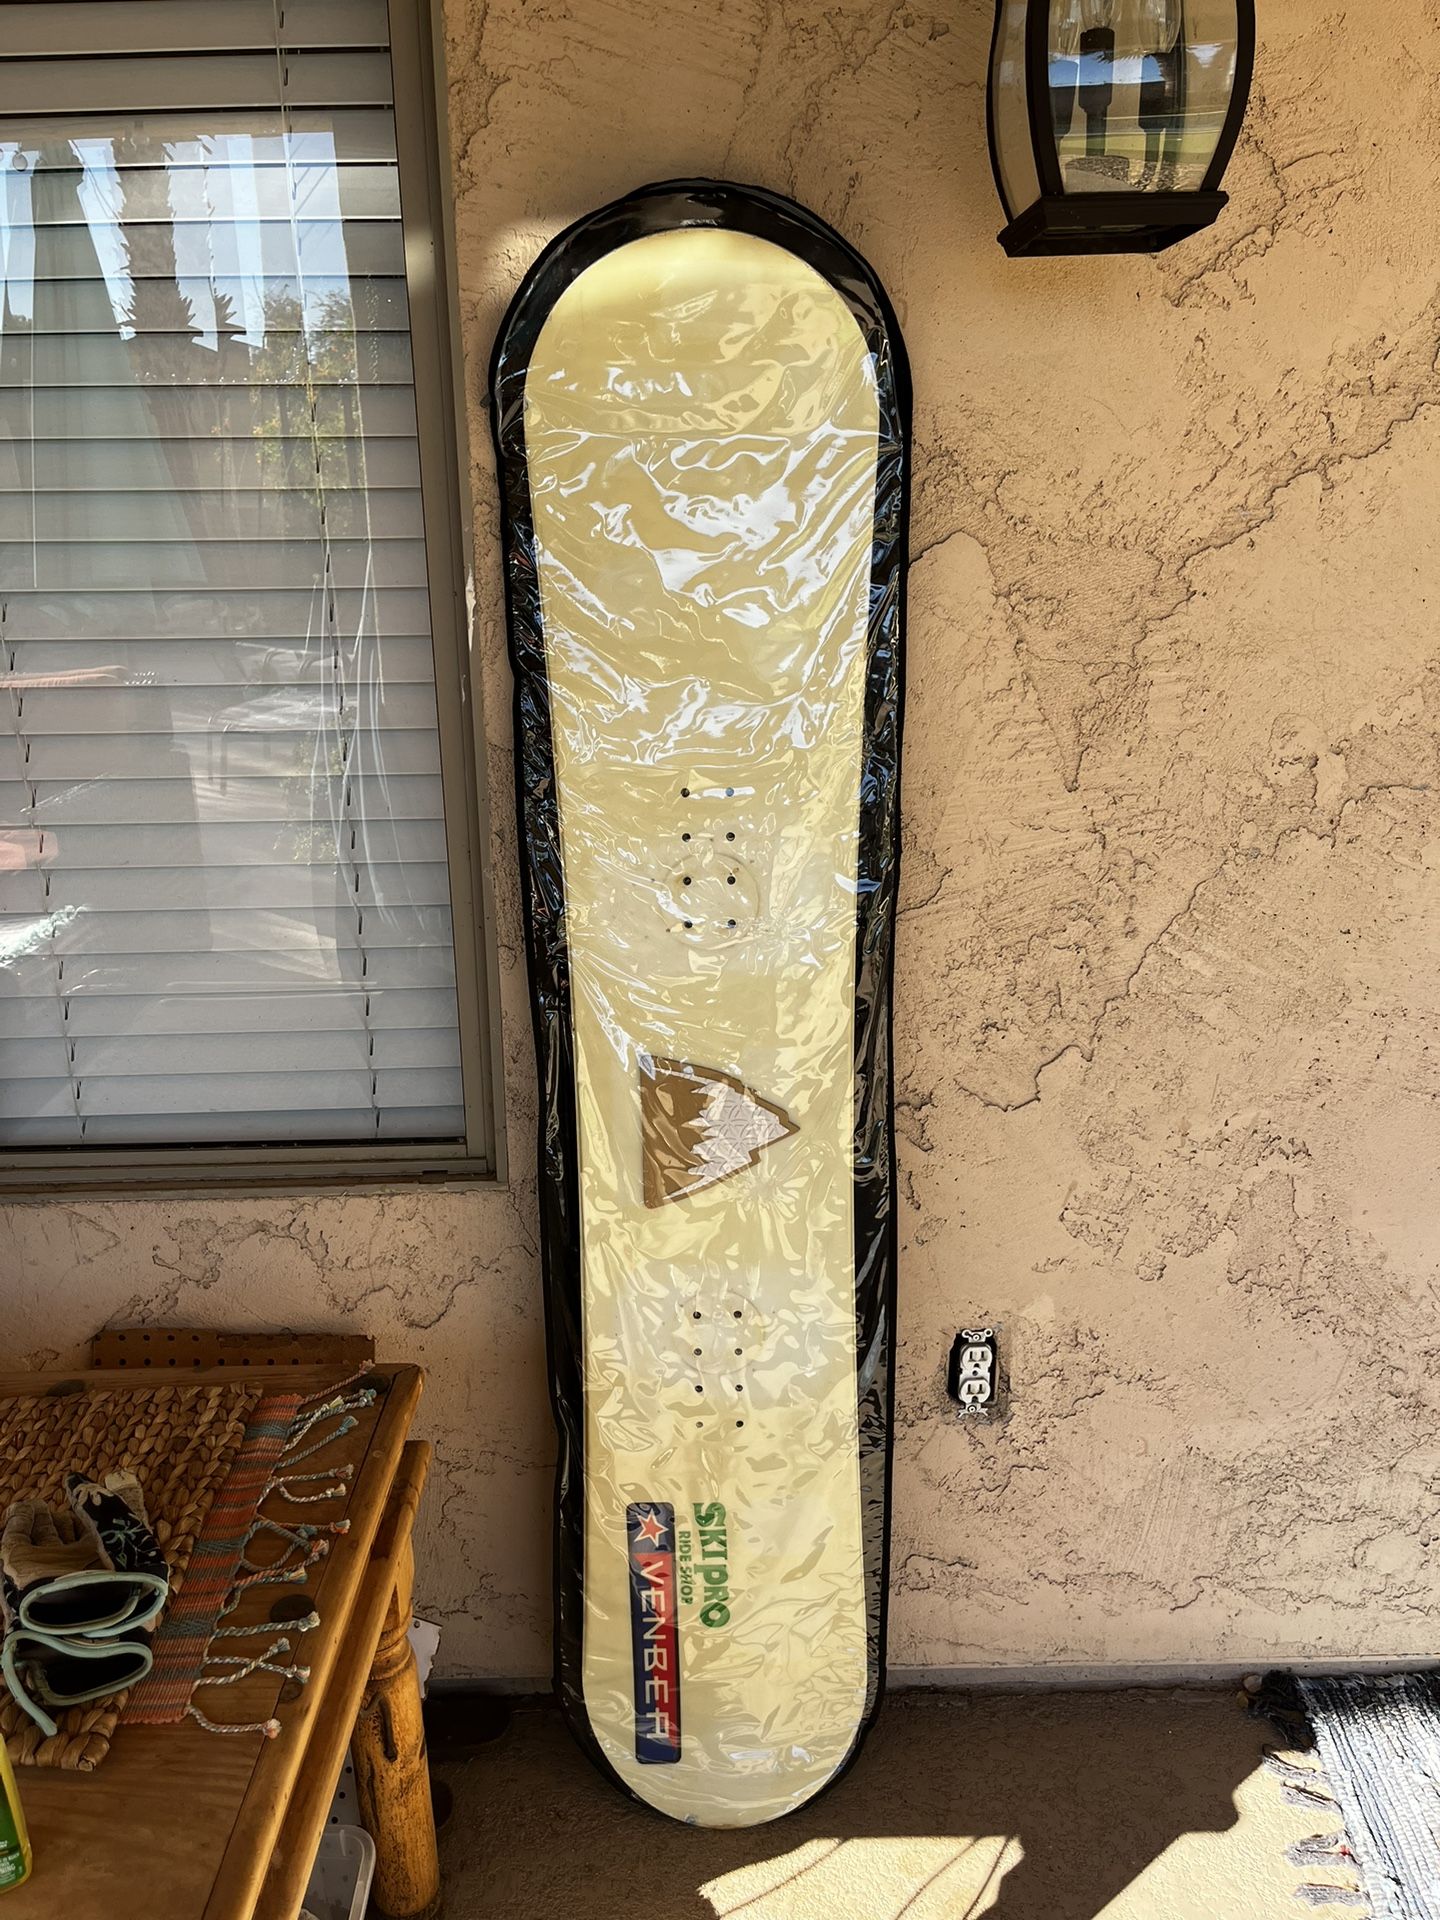 VENBEA Snowboard + Bag